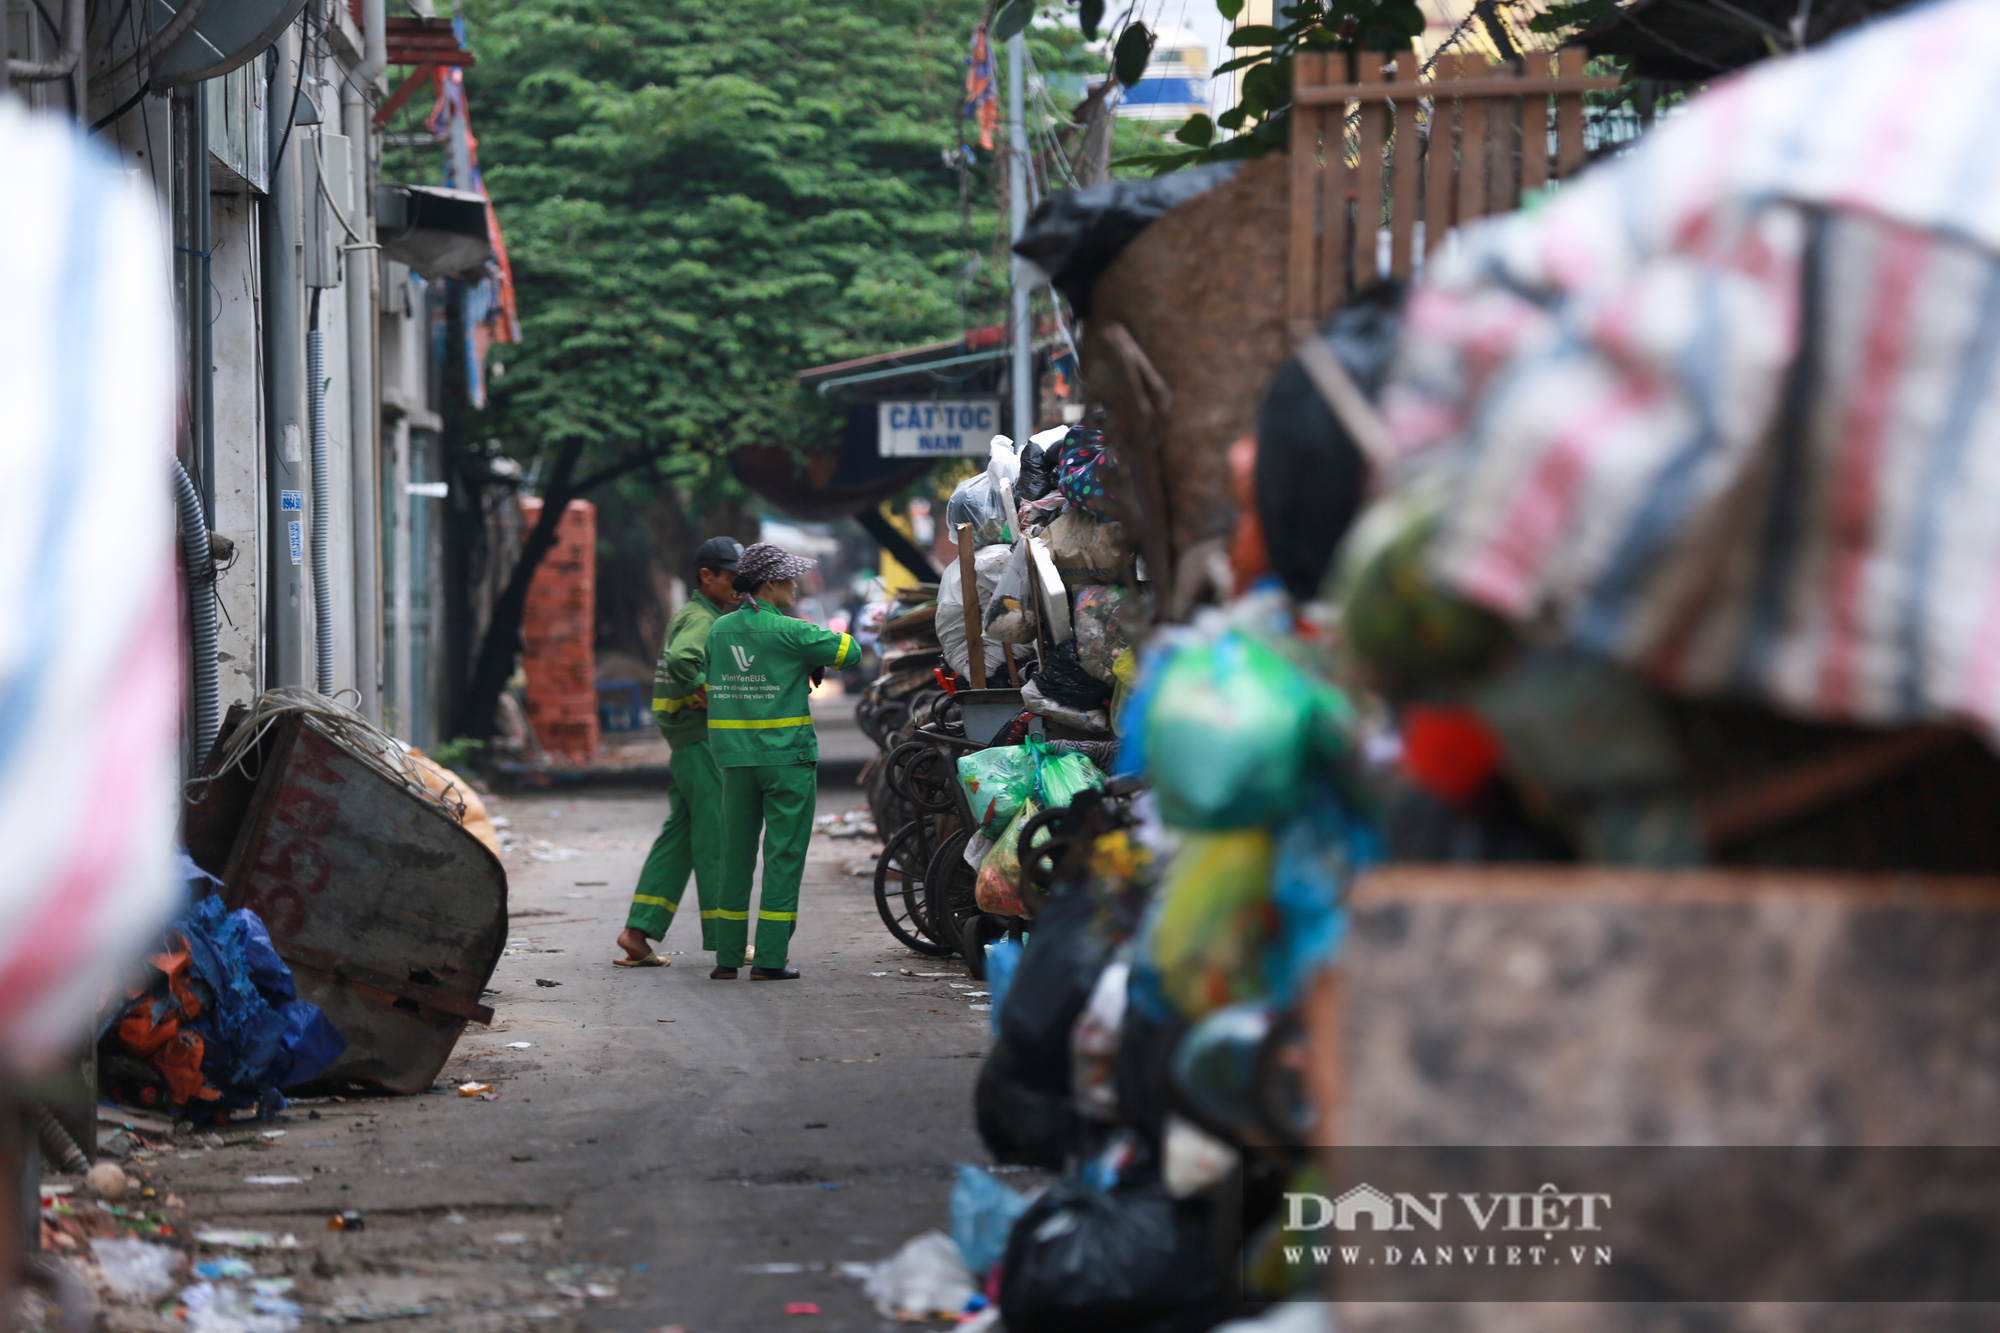 Bãi rác Nam Sơn bị chặn, người dân Hà Nội nín thở đi qua núi rác - Ảnh 15.